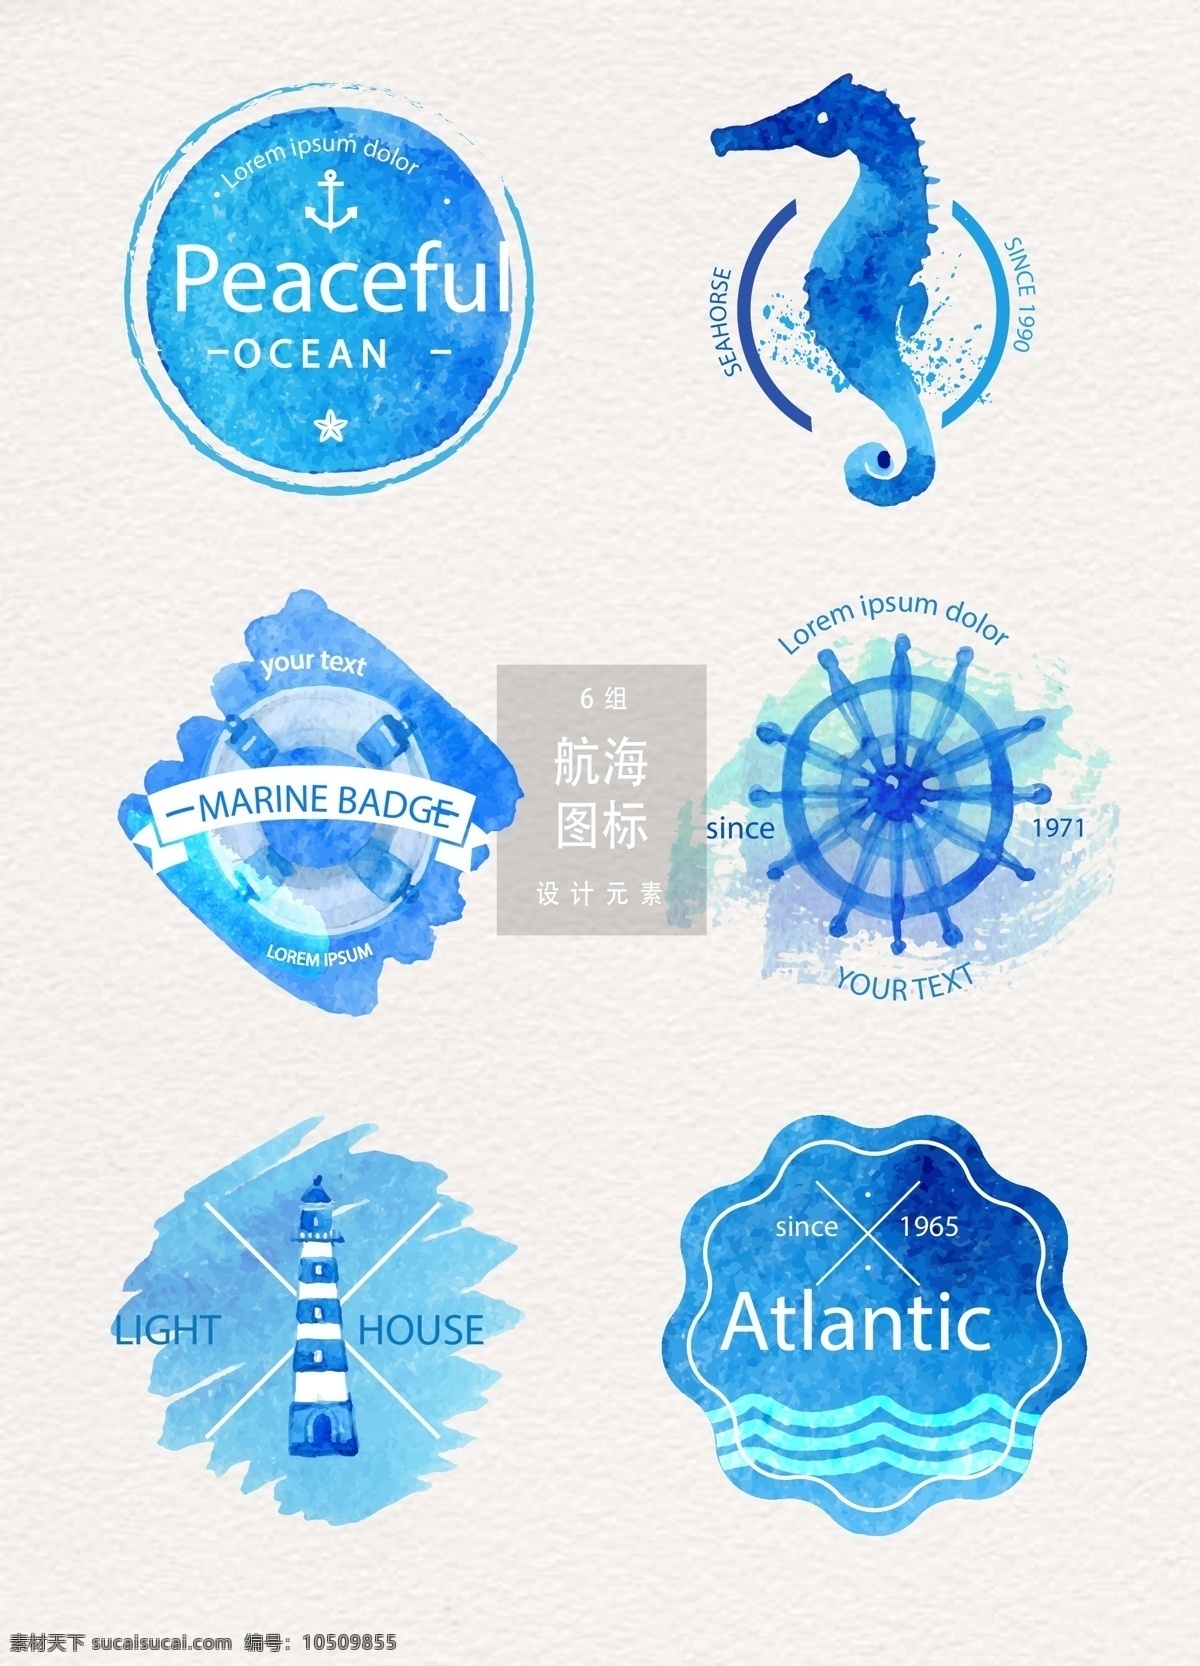 航海 图标 元素 图标设计 矢量素材 海洋 灯塔 航海图标 水彩 水彩图标 水彩笔刷 海马 蓝色水彩